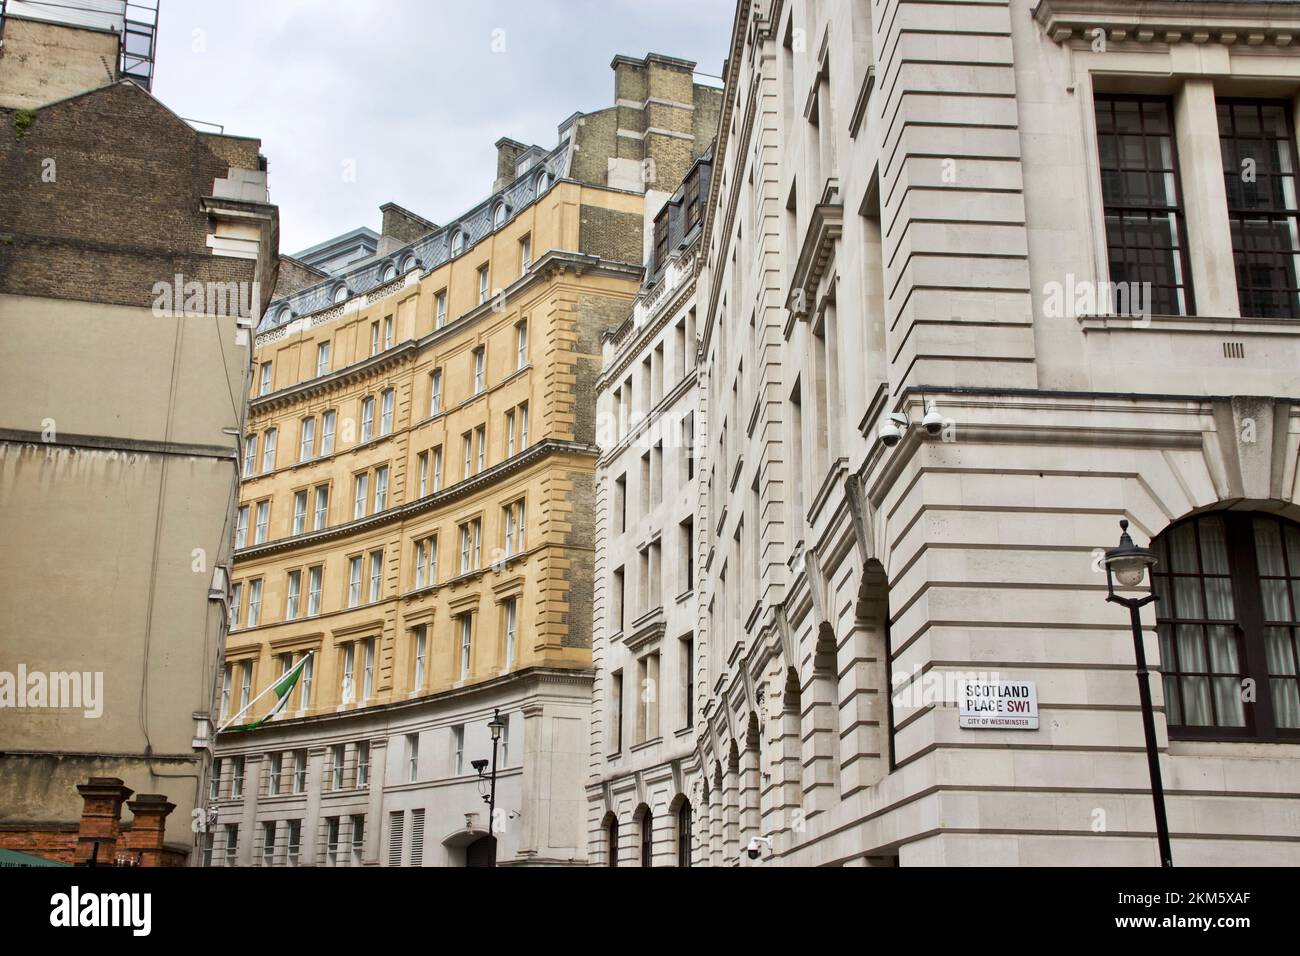 Scotland place à Westminster, Londres a été le cadre du ministère de la magie dans les films Harry Potter Banque D'Images